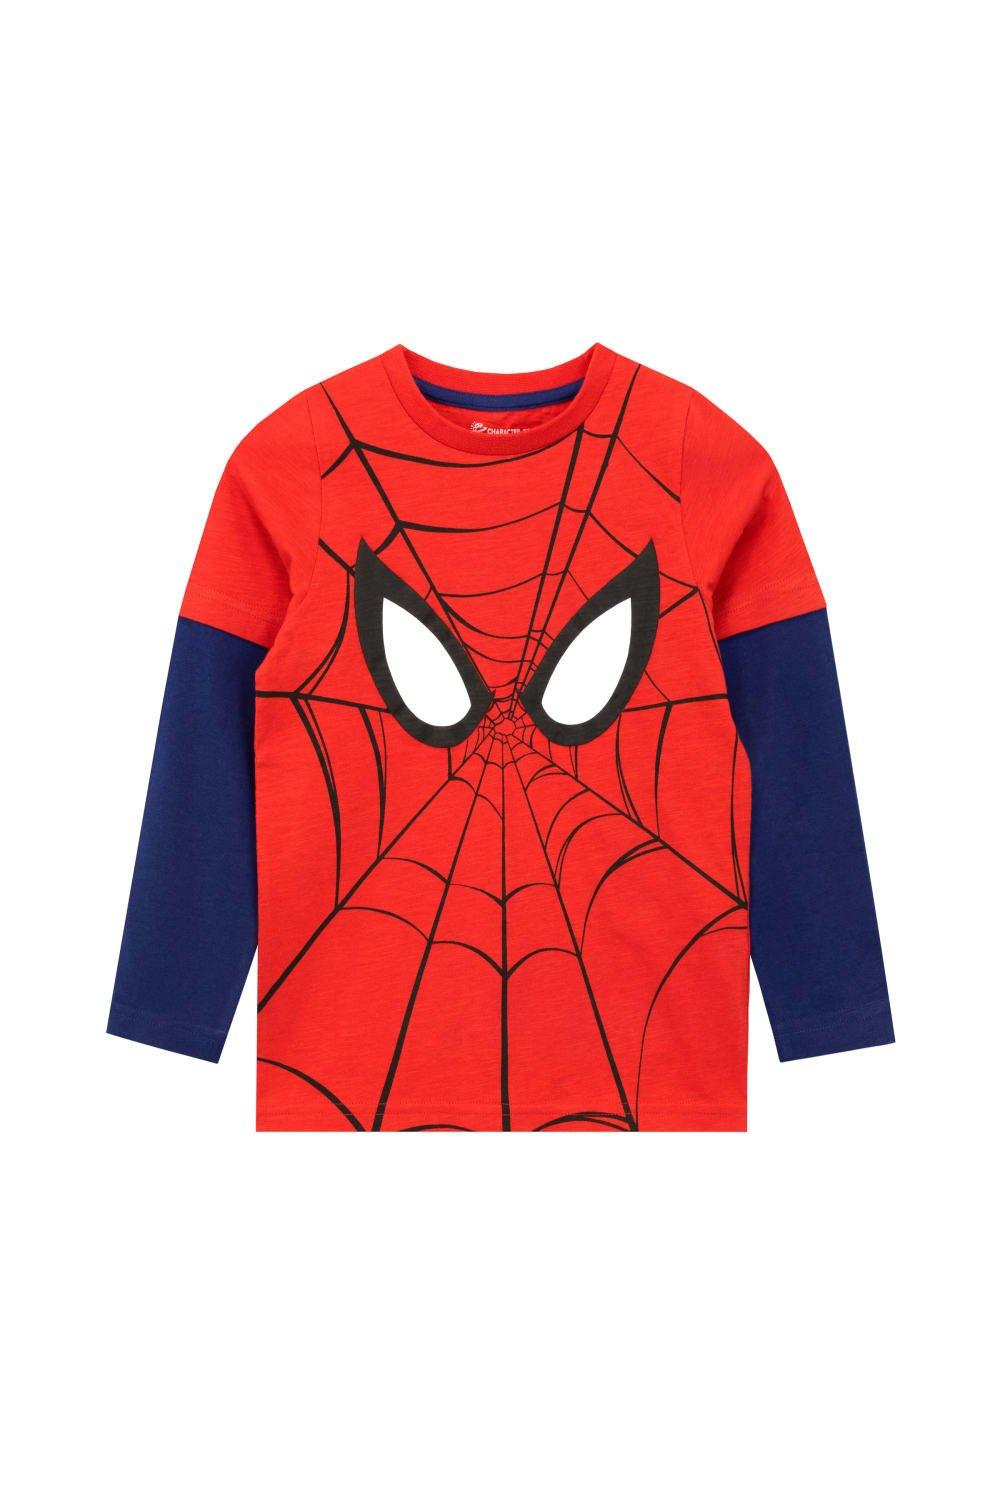 Spiderman Long Sleeve Top